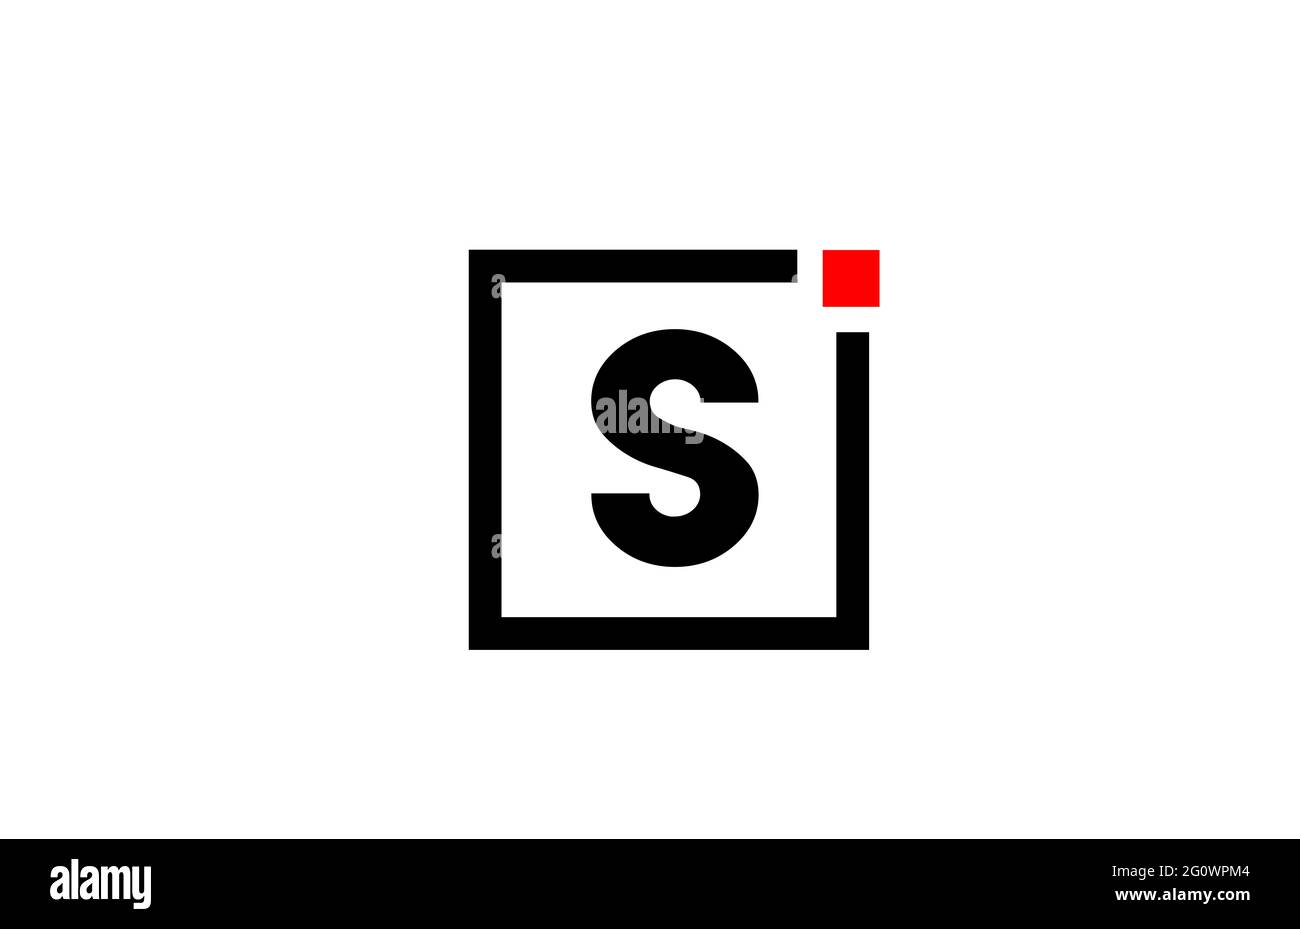 L logo dell'icona della lettera dell'alfabeto S in bianco e nero. Design aziendale e aziendale con punto quadrato e rosso. Modello di identità aziendale creativa Foto Stock